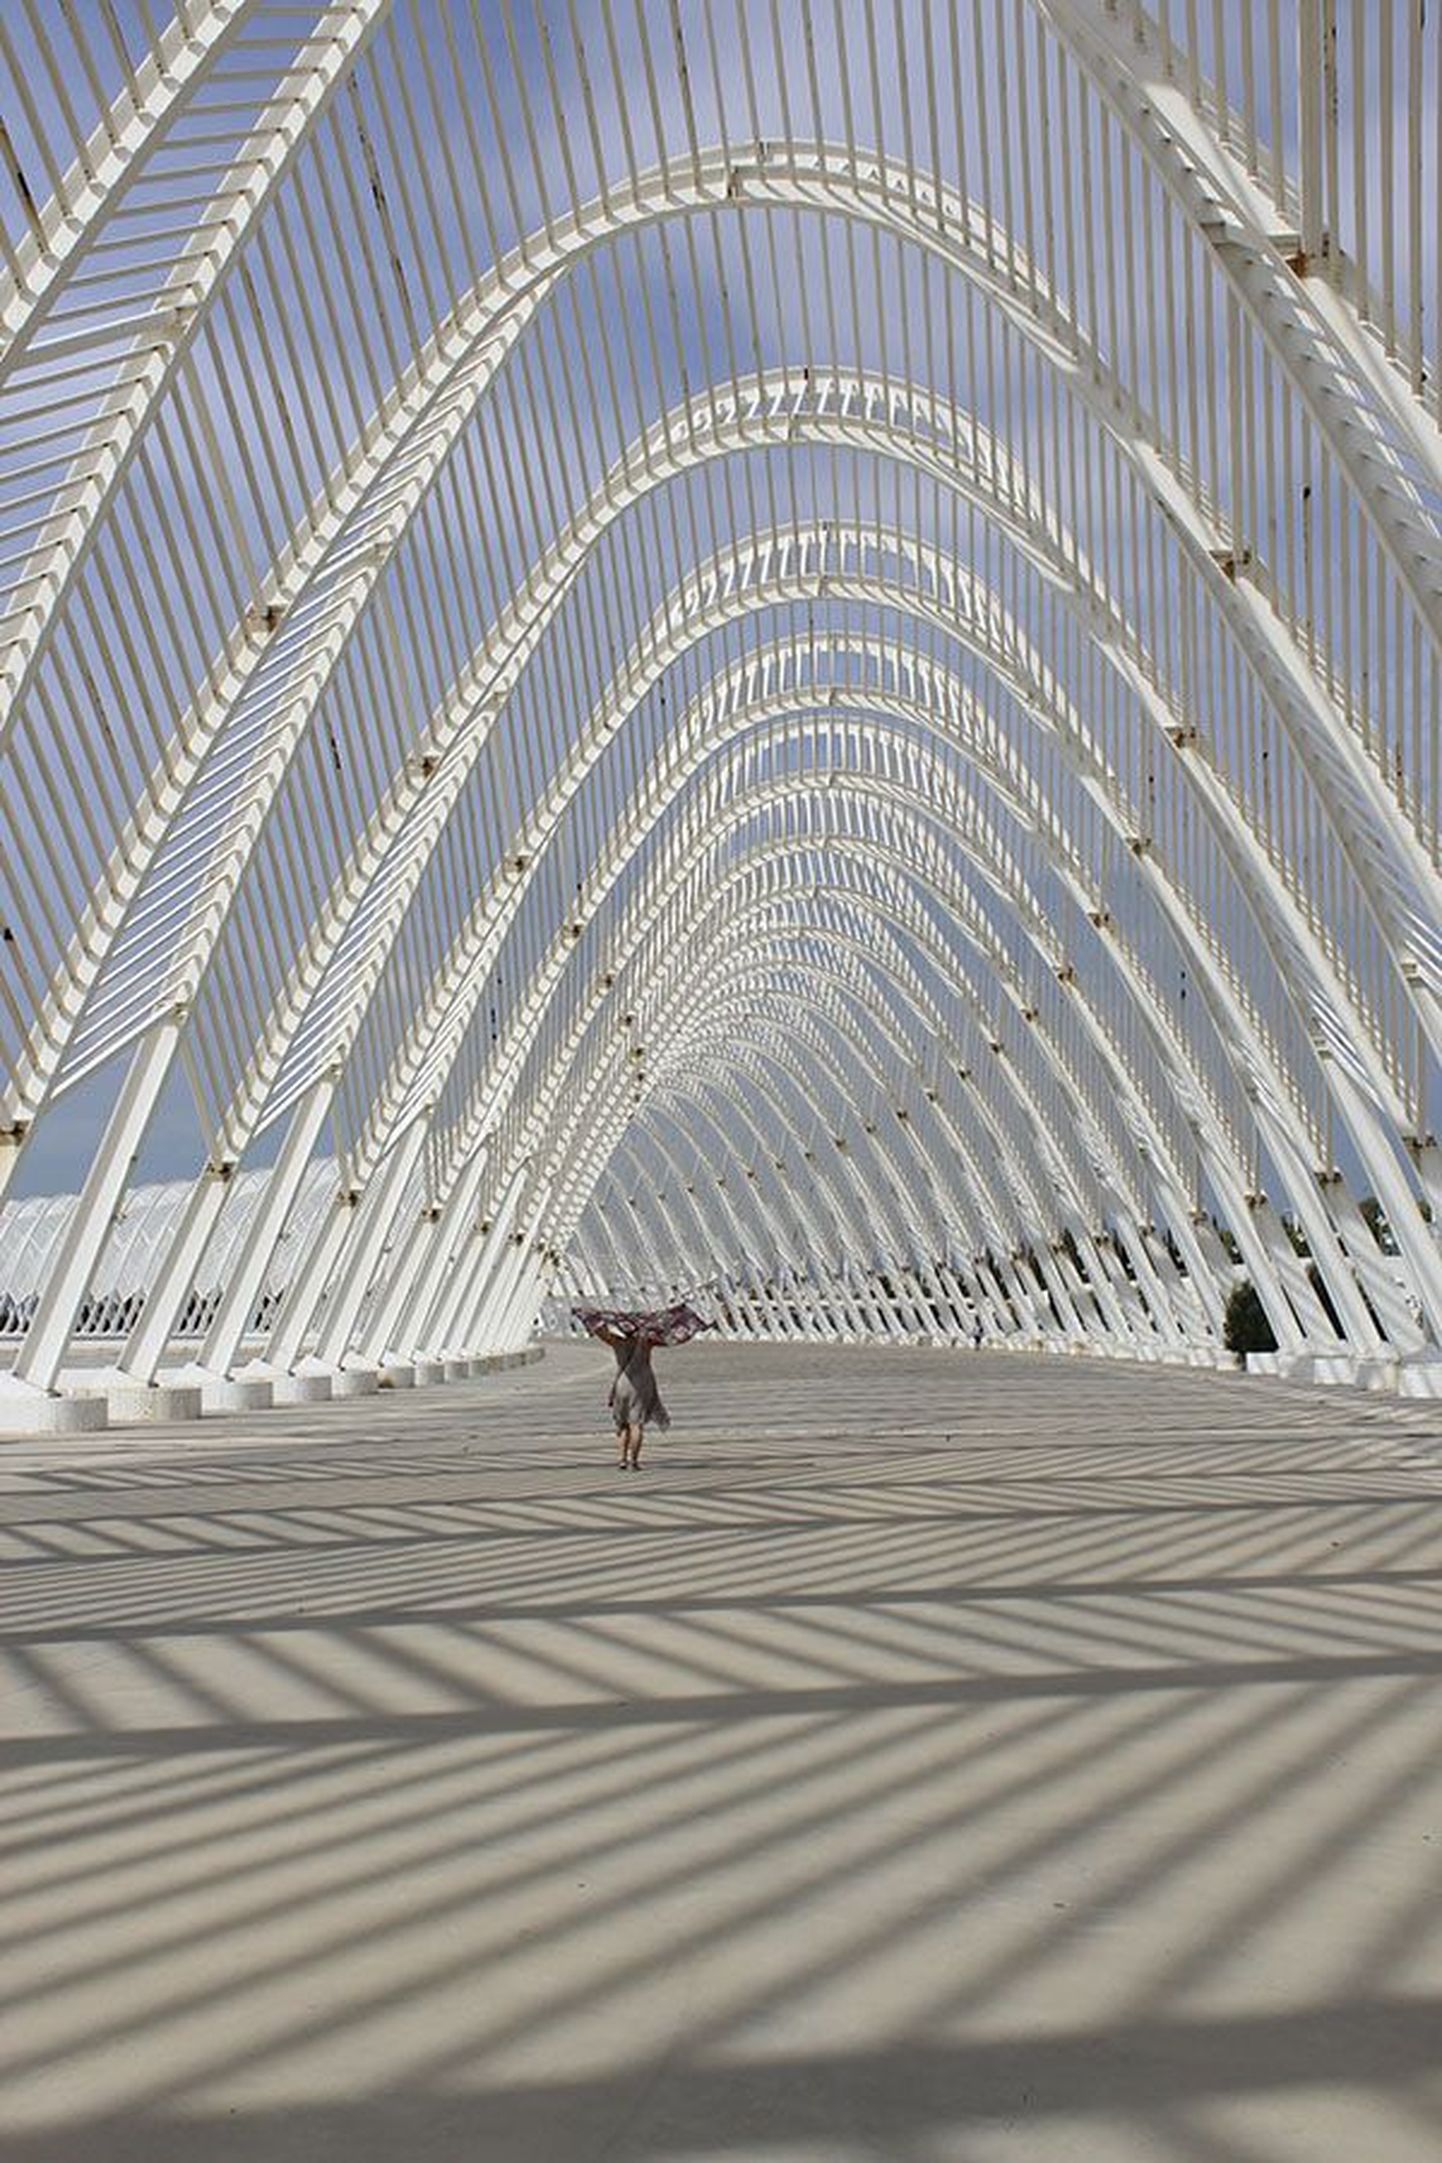 Santiago Calatrava hingematvate tööde pärast sõidetakse maailma eri paikadesse spetsiaalselt kohale. Massiivsus ja haprus, vaba õhuline mõttelend, iga nurga all muutuvad varjud ja vormid paeluvad nii ööl kui päeval. Ateena olümpiakompleksi velodroom pole erand.